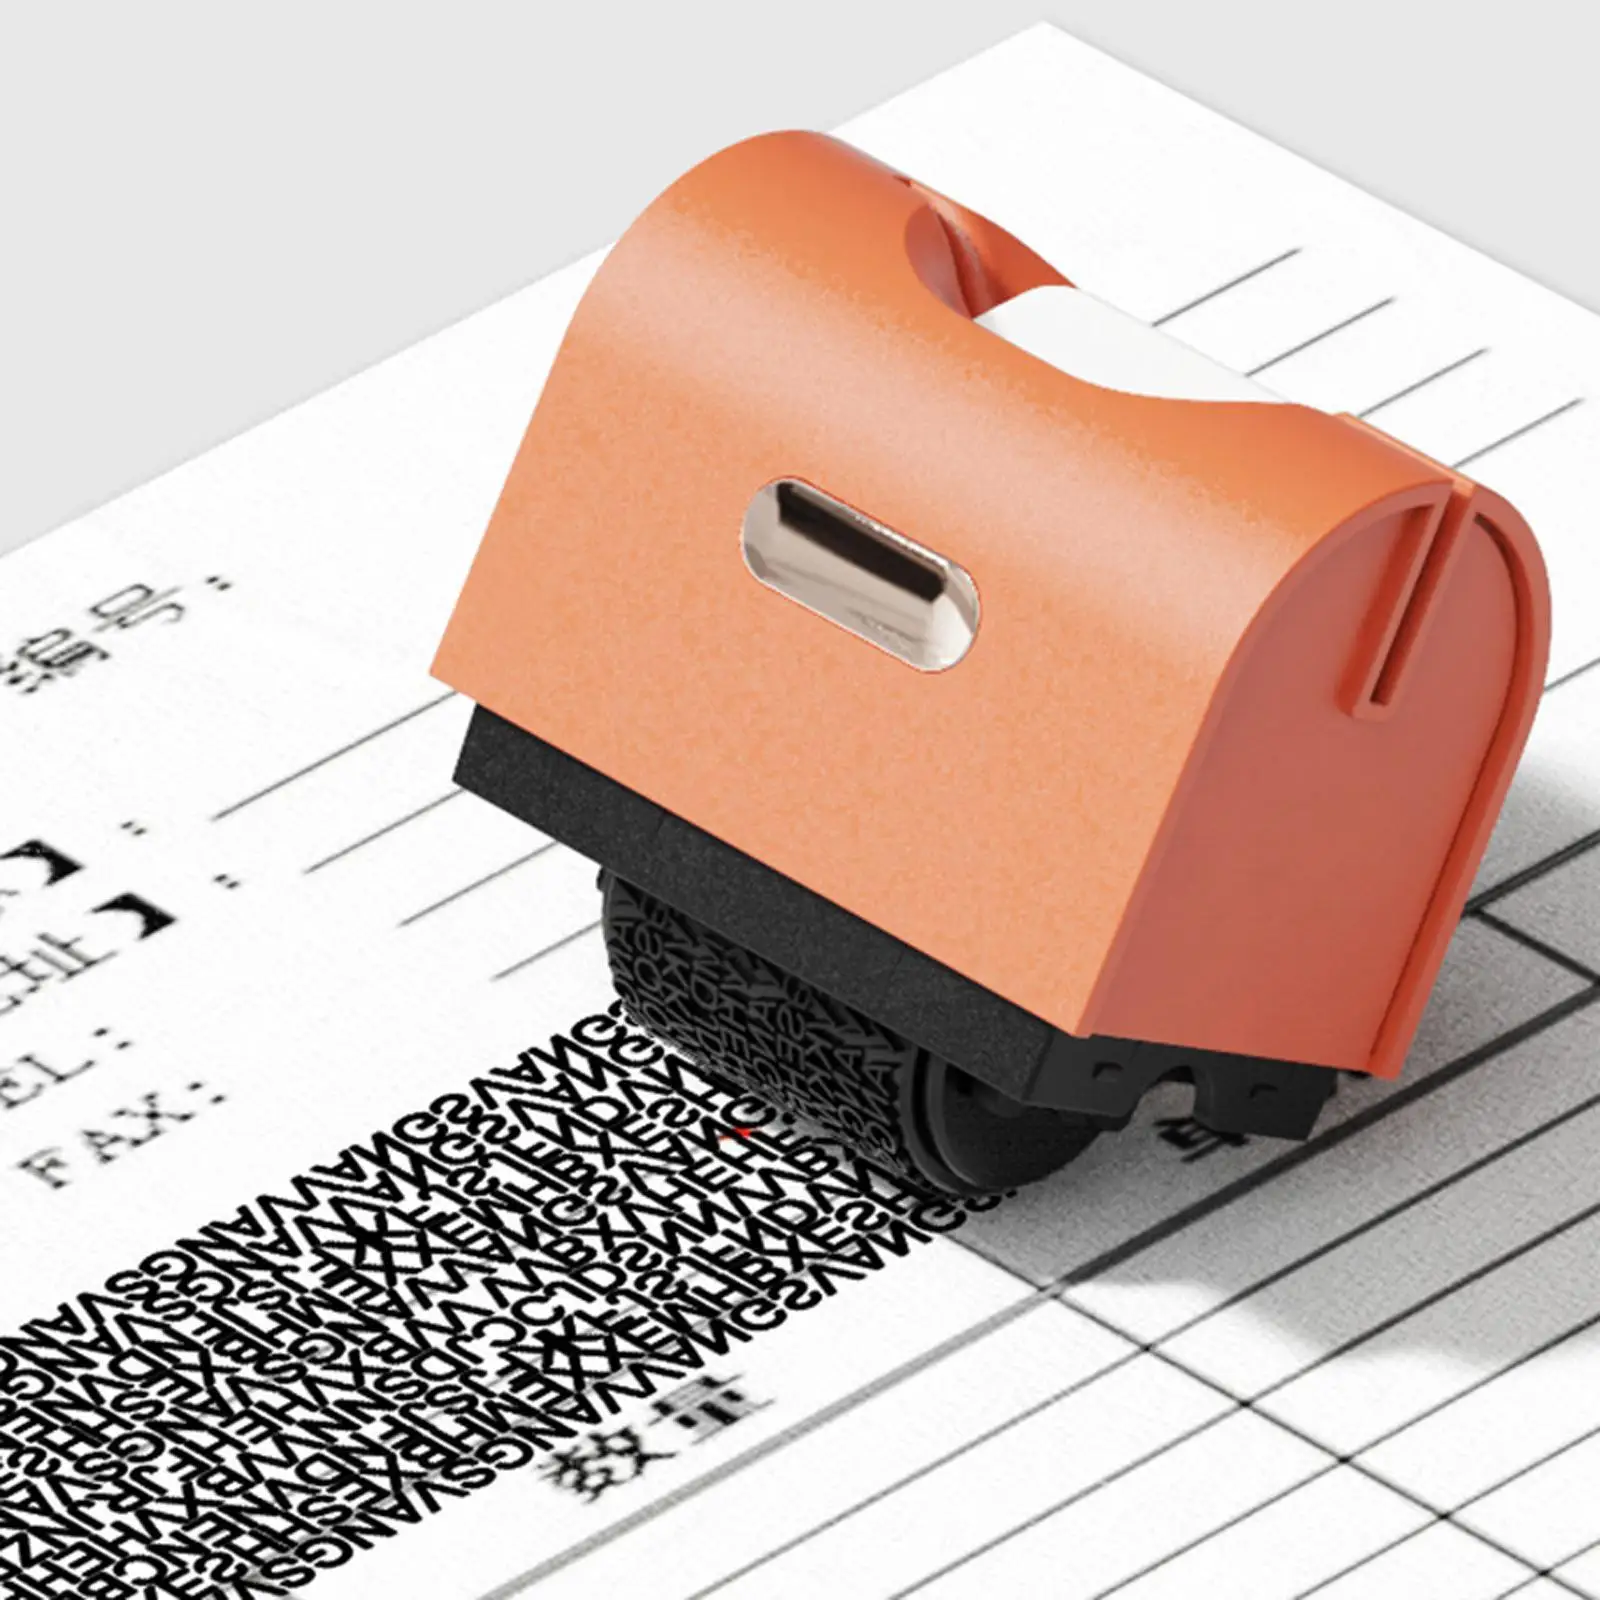 

Роликовые штампы для защиты личных данных от кражи, Широкий комплект для адресной идентификации, конфиденциальных данных, включая Запасные инструменты для безопасности I C5B1